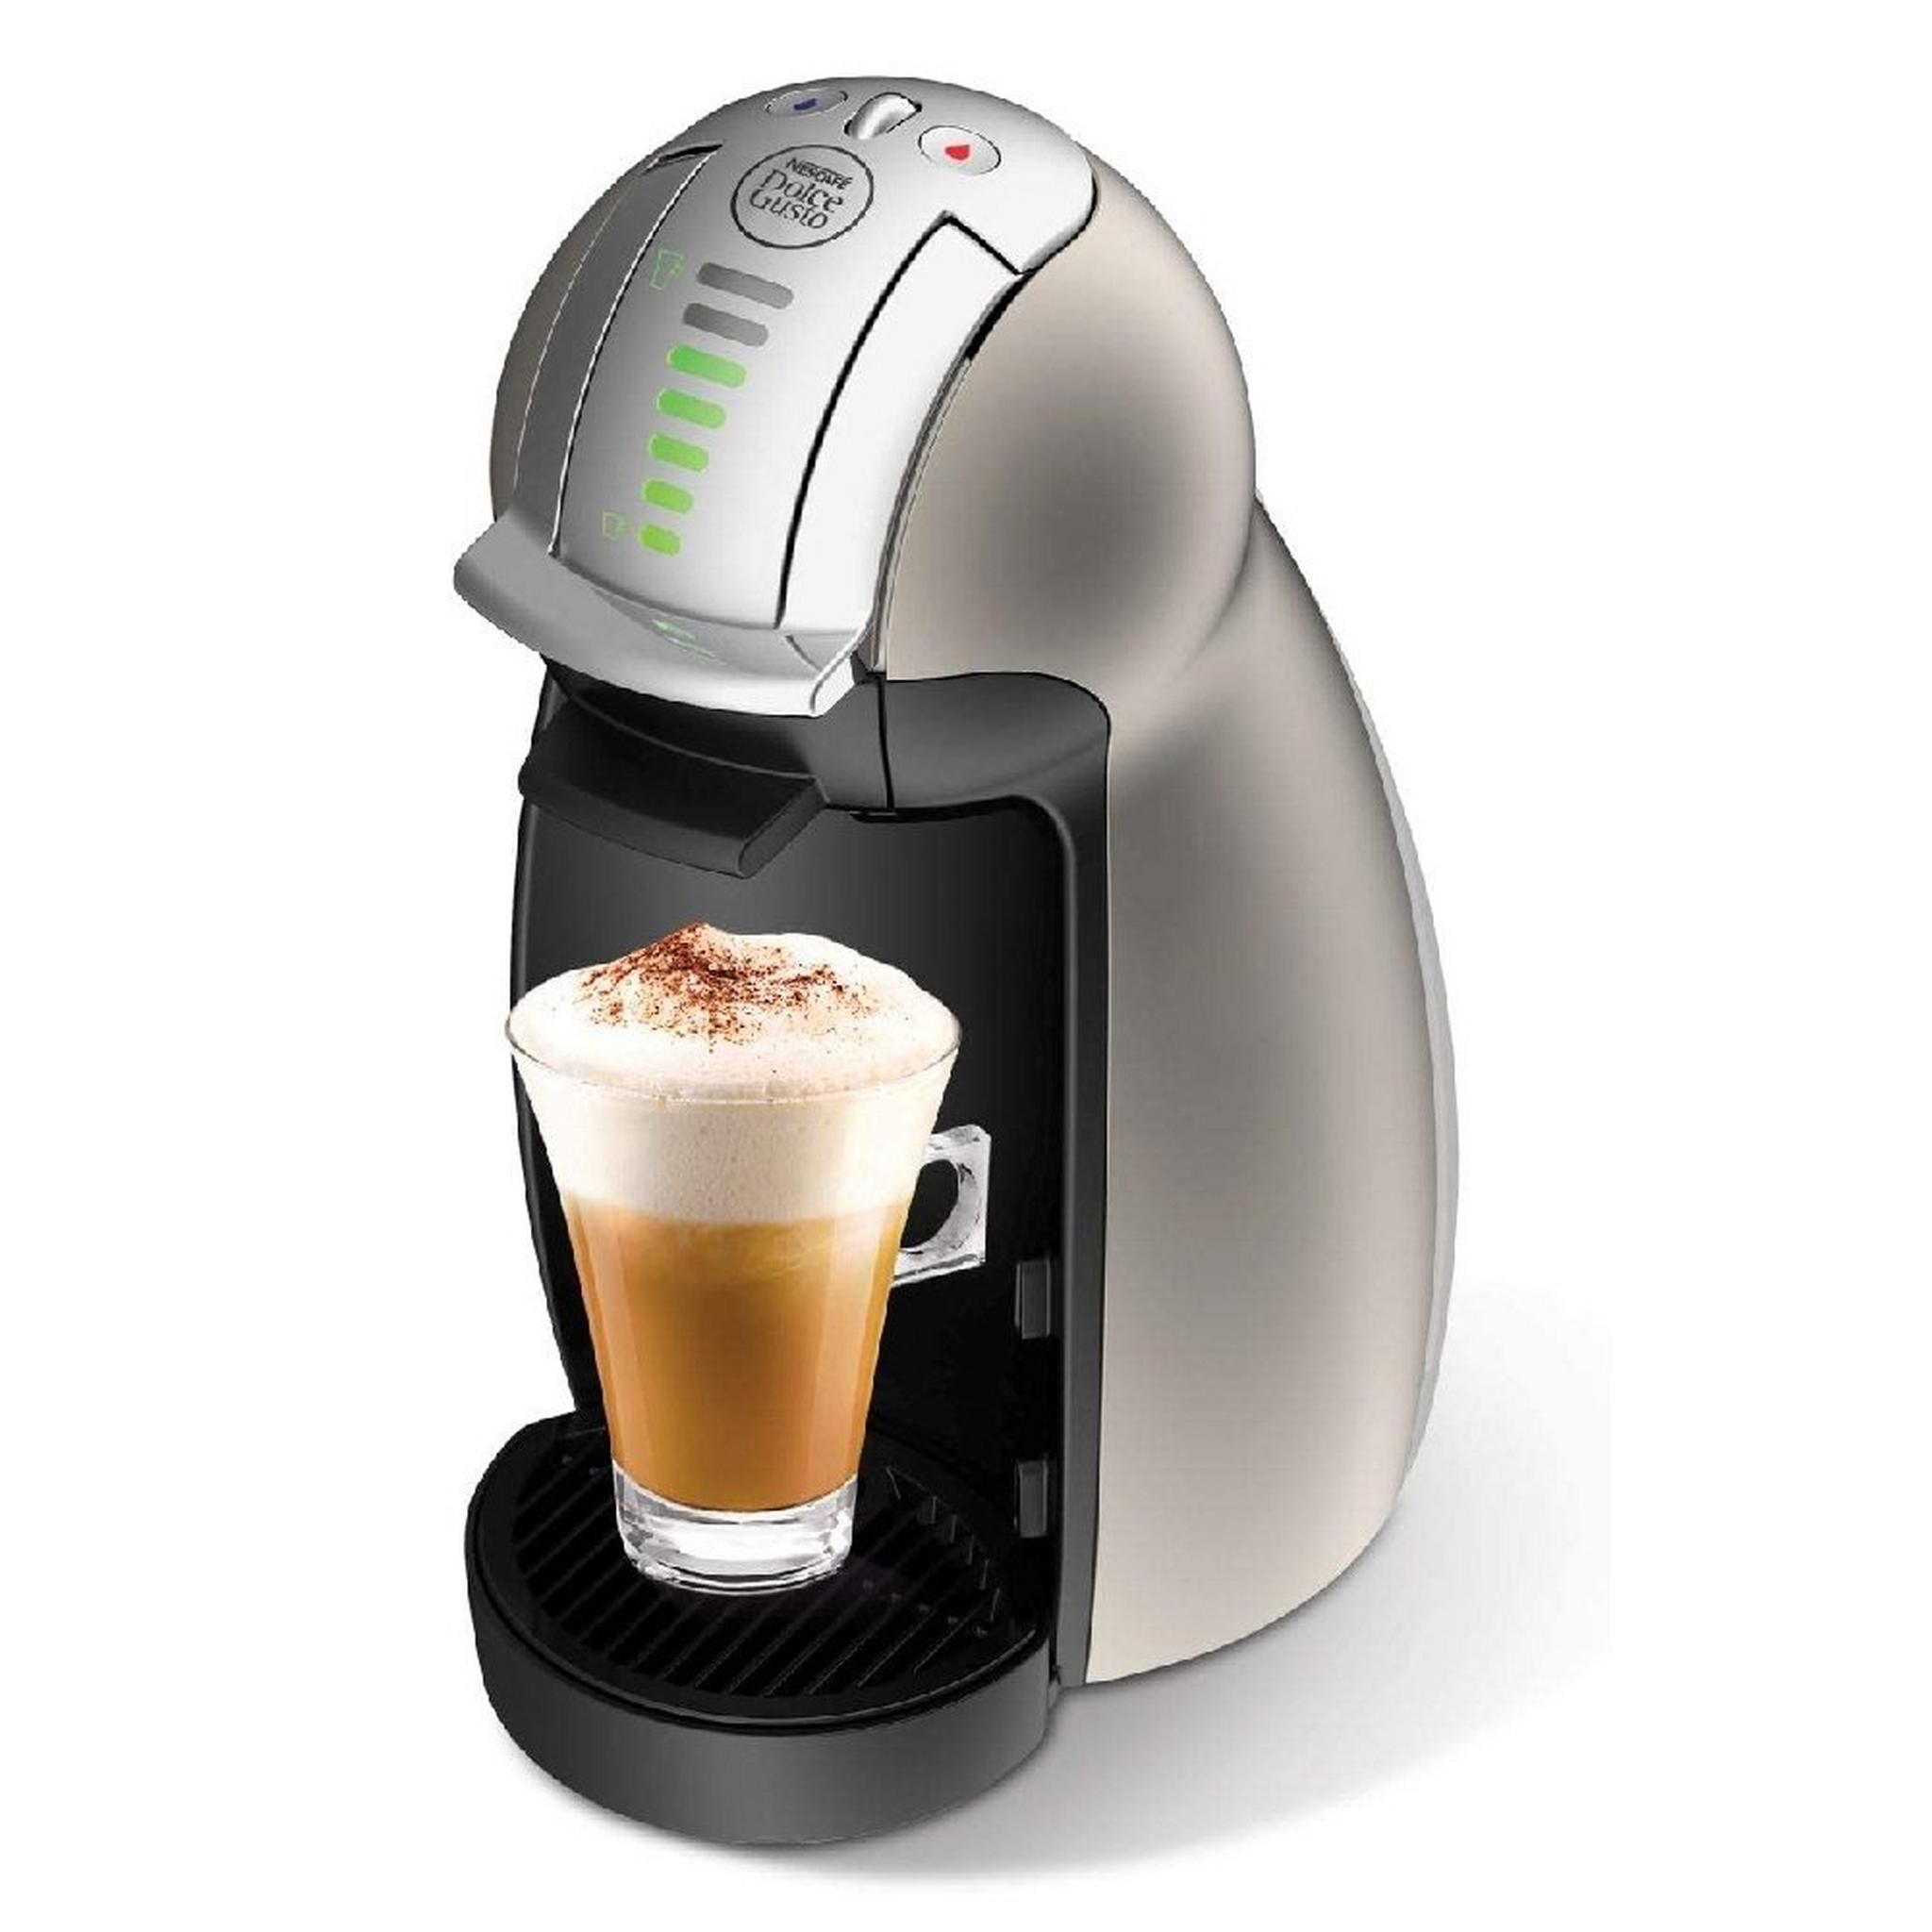 Delonghi Genio 2 Capsule Coffee Machine, 1500W, 1 Liter, EDG465.T - Titanium